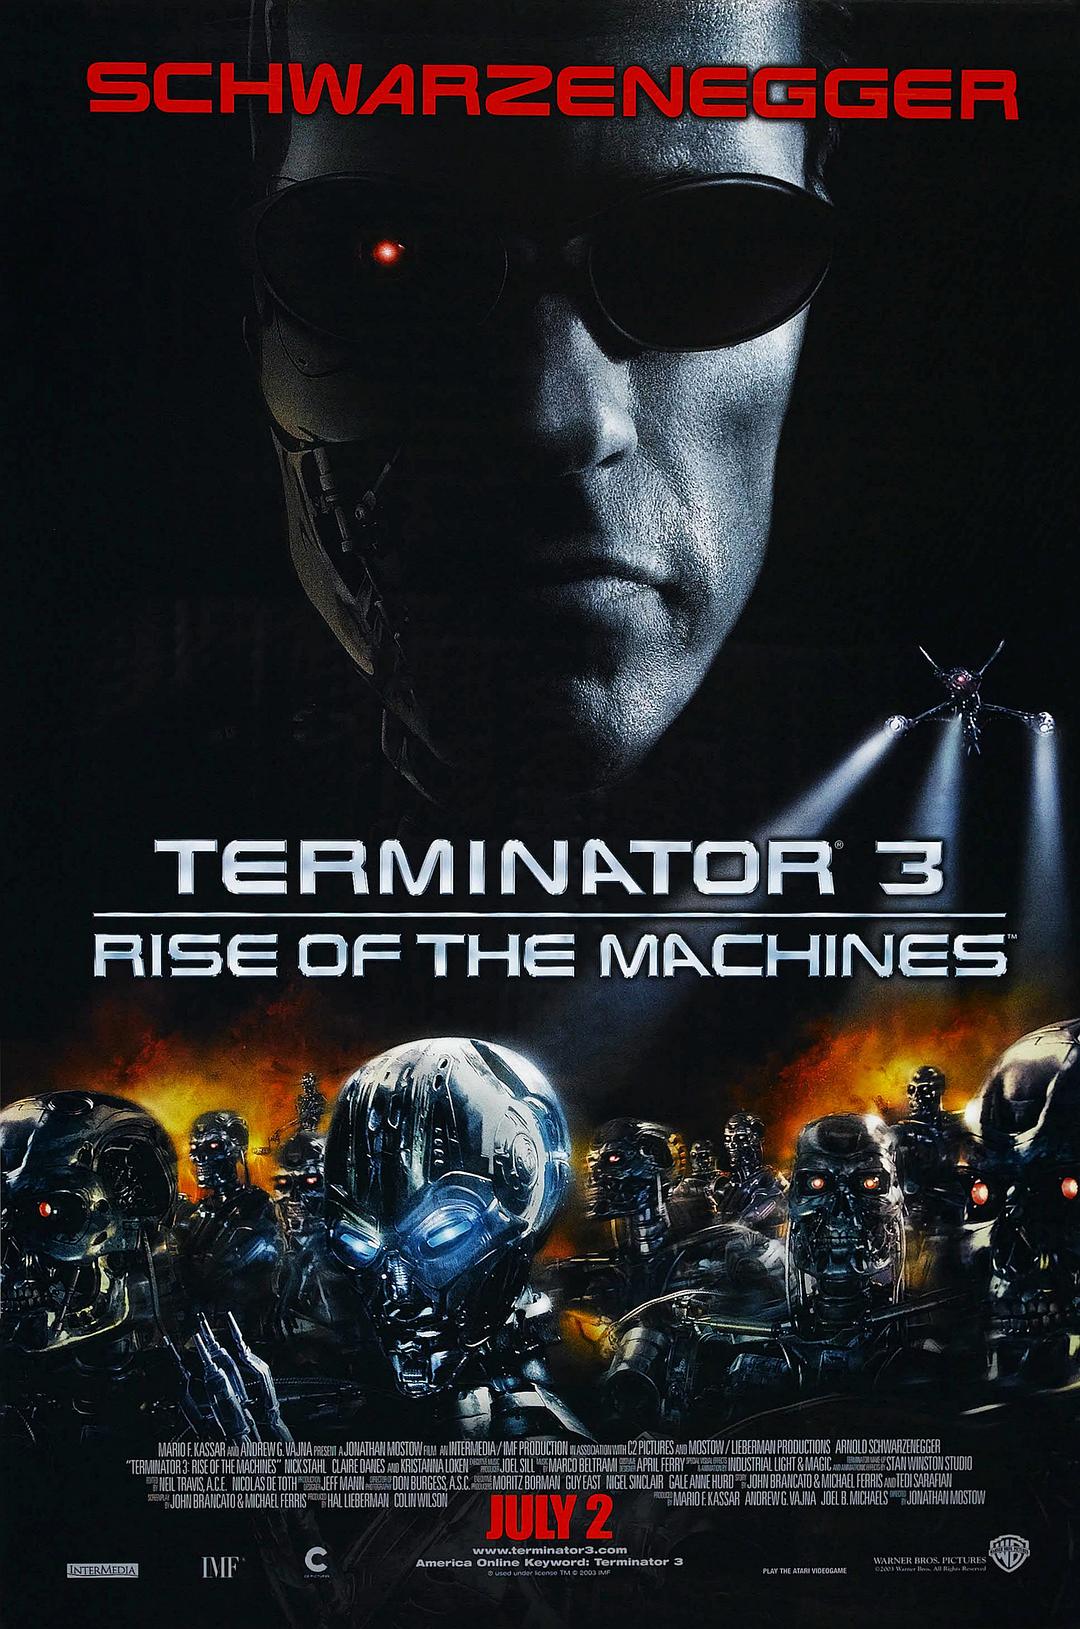 终结者3 蓝光原盘下载+高清MKV版 /终结者3： 机器的觉醒/未来战士3：歼灭者TX/魔鬼终结者3 2003 Terminator 3: Rise of the Machines 35.5G